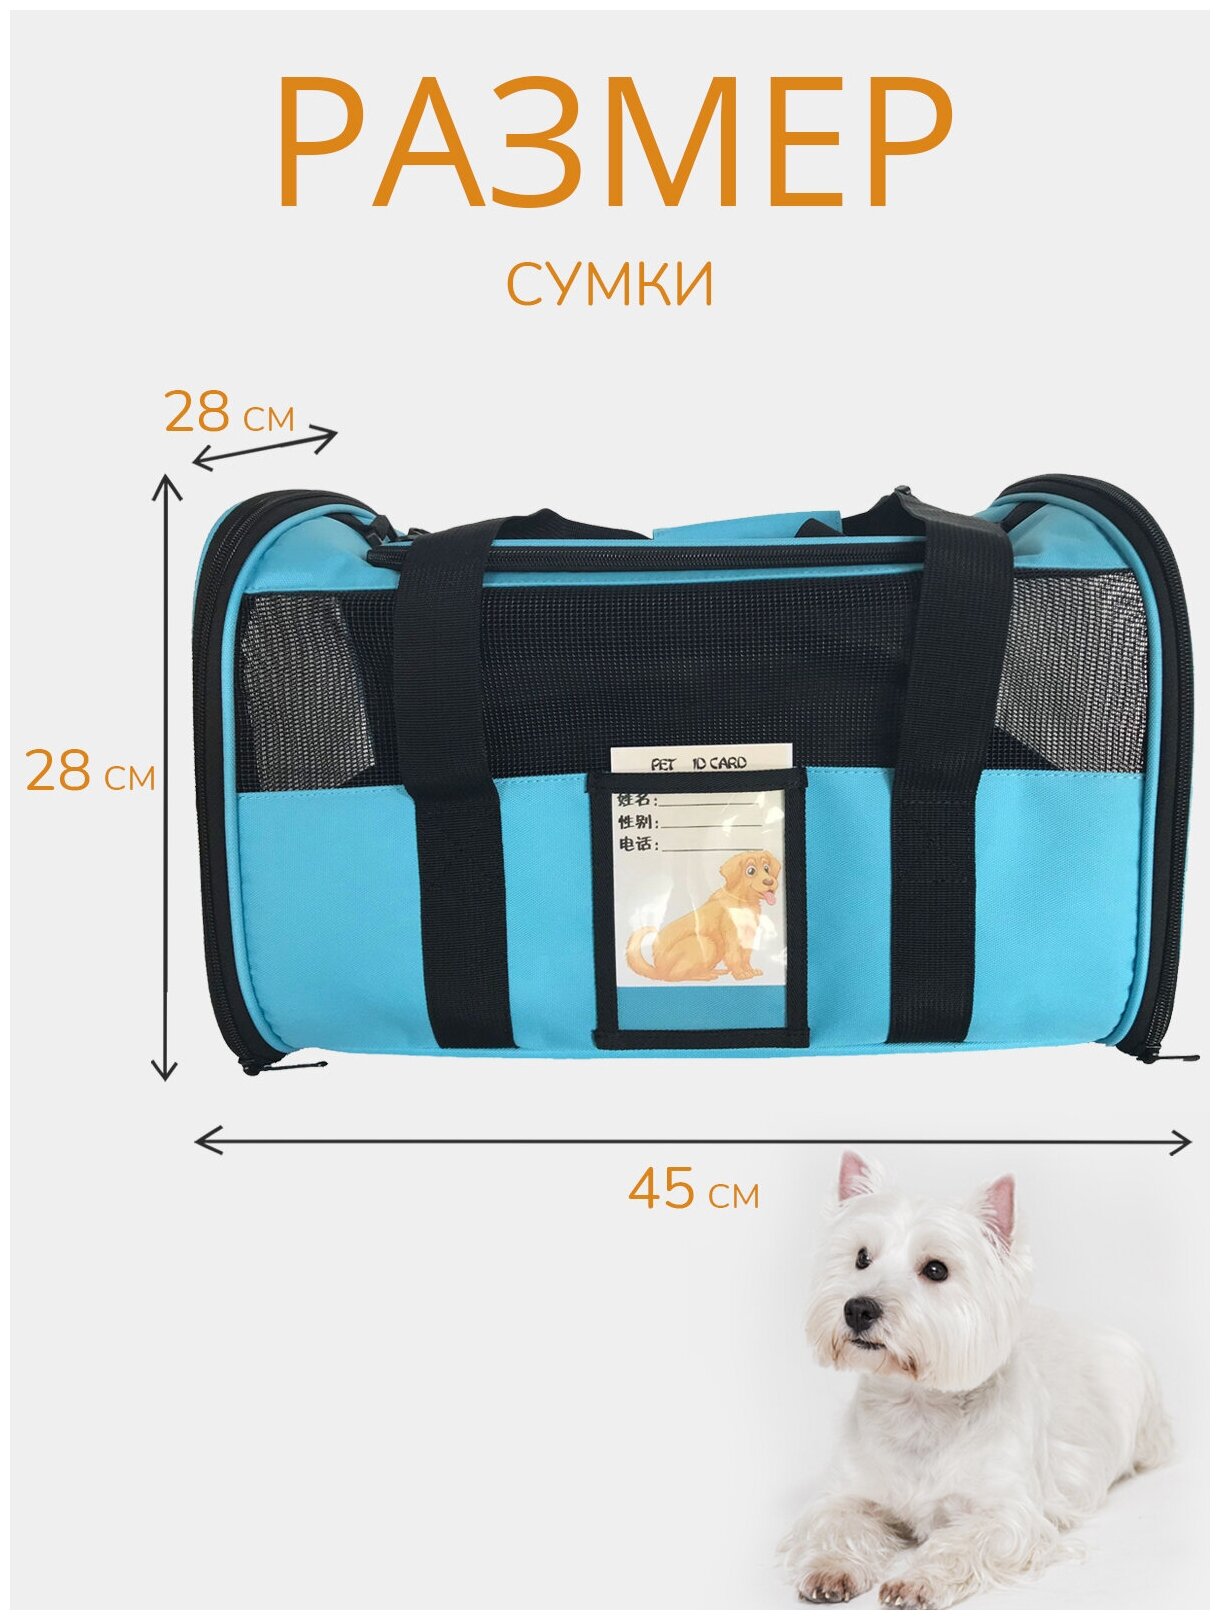 Переноска для животных ZES, сетчатая сумка для переноски кошек и собак мелких пород, размер 45х28х28, голубого цвета - фотография № 7